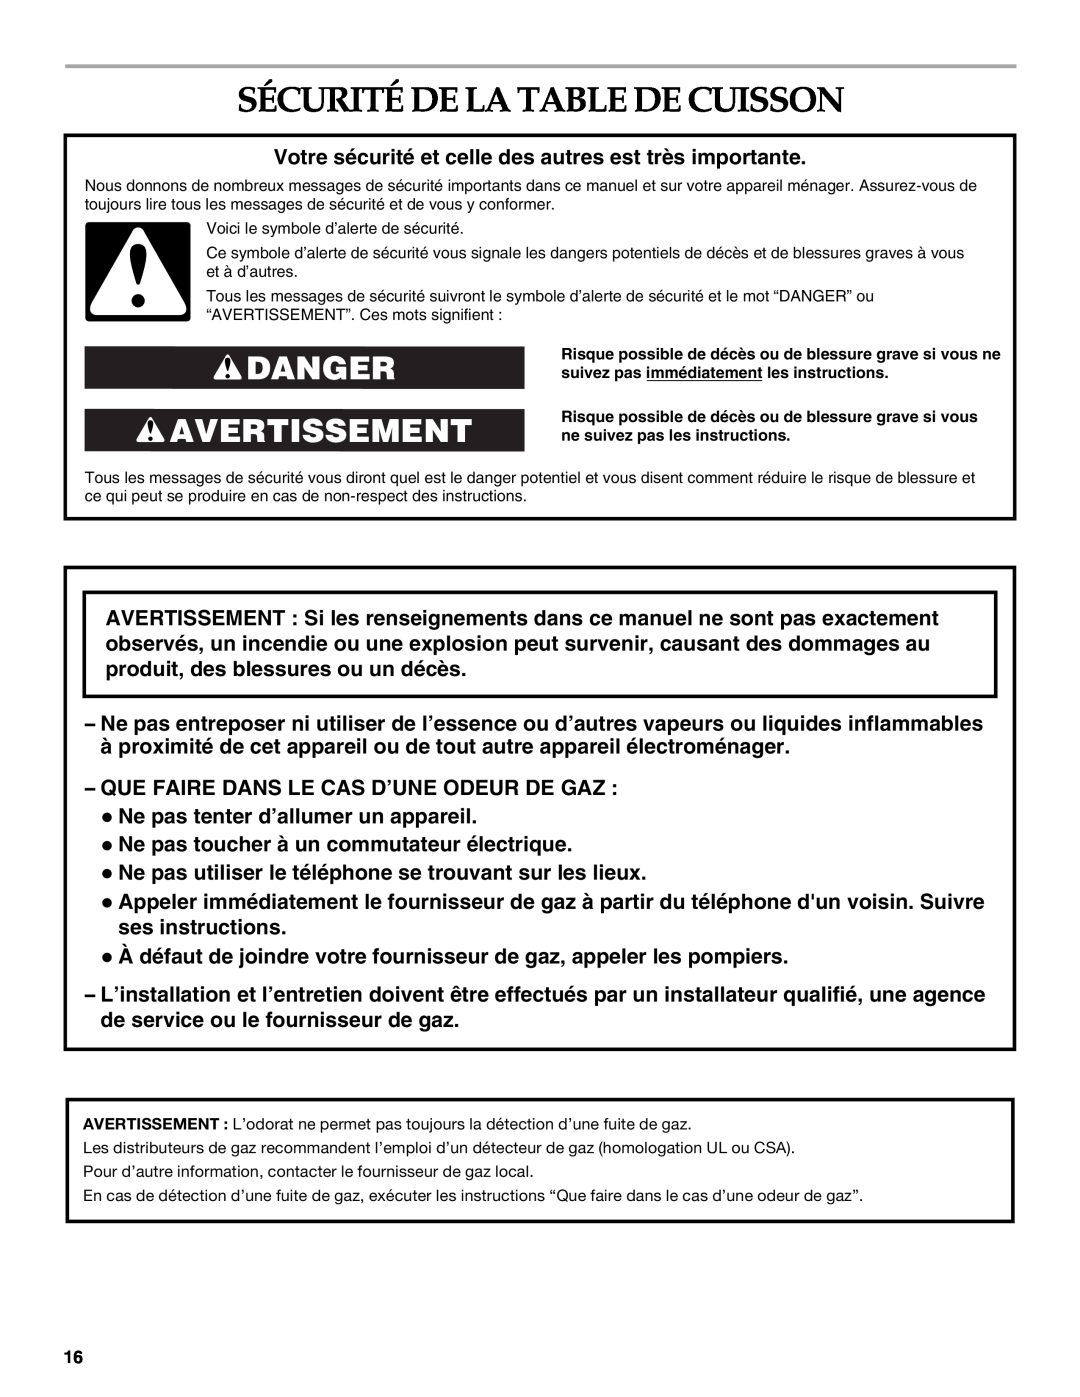 KitchenAid KGCV566 manual Sécurité De La Table De Cuisson, Danger Avertissement 